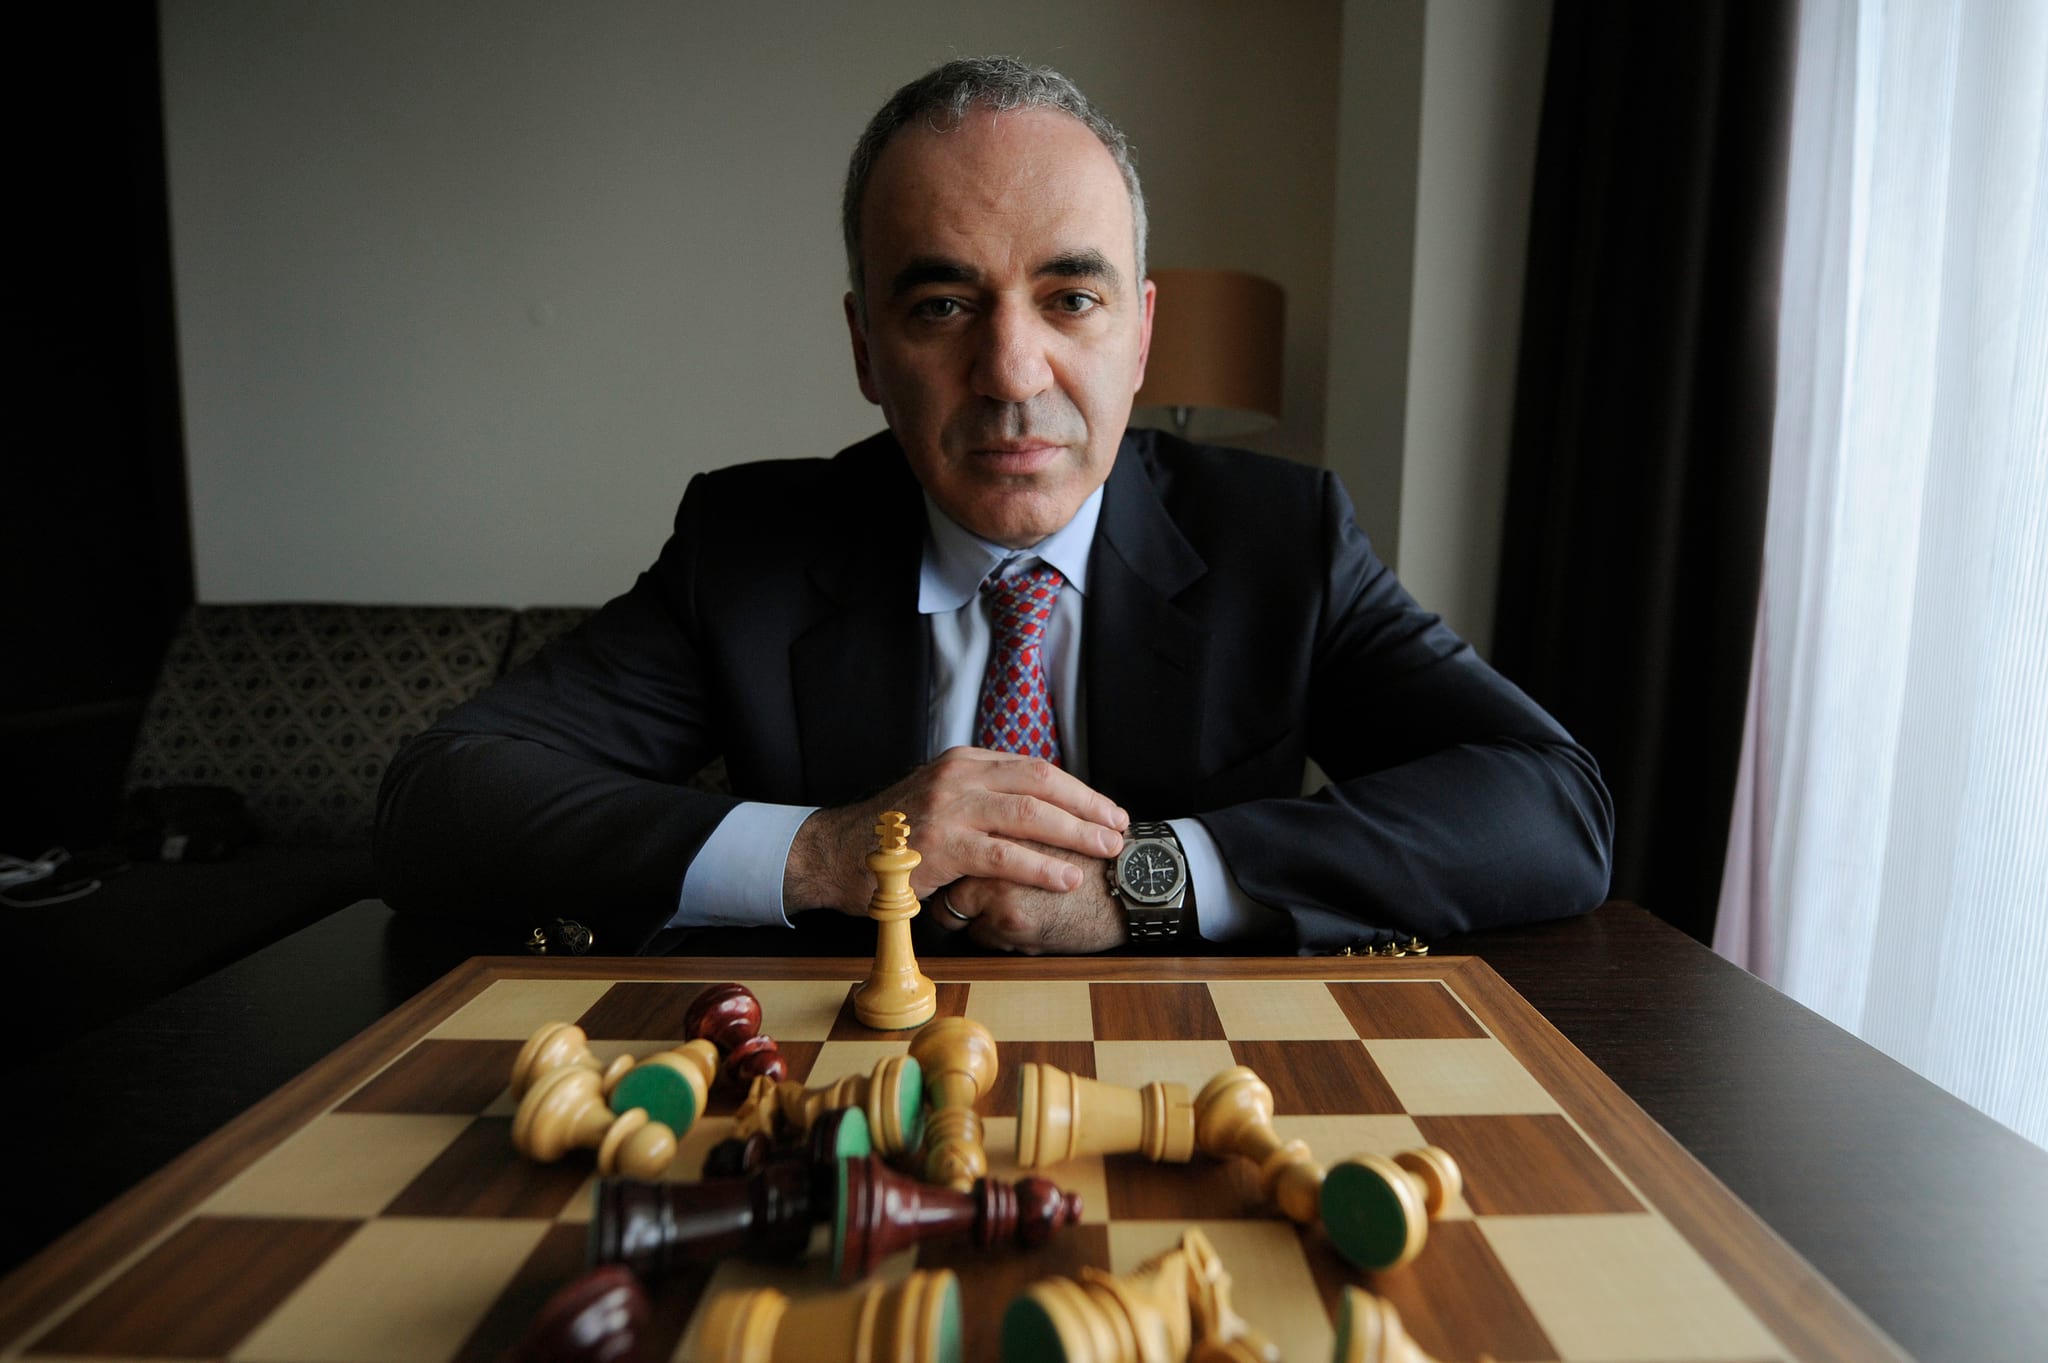 Garry Kasparov [Xadrez]